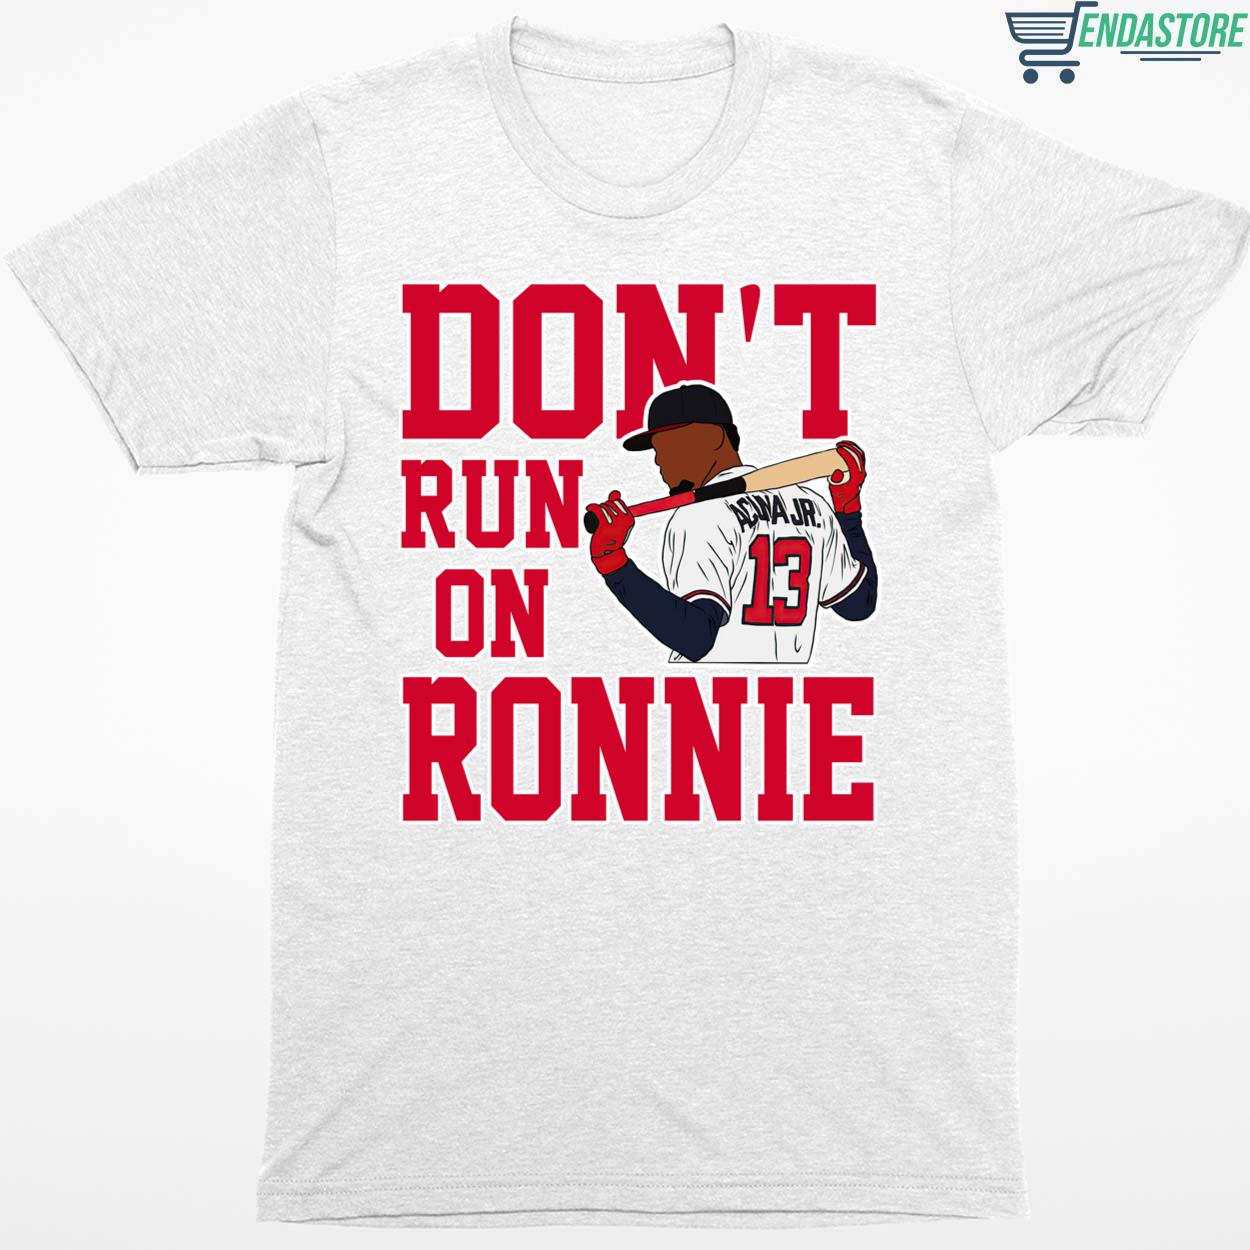 Endastore Ronald Acuna Jr Don't Run on Ronnie Shirt